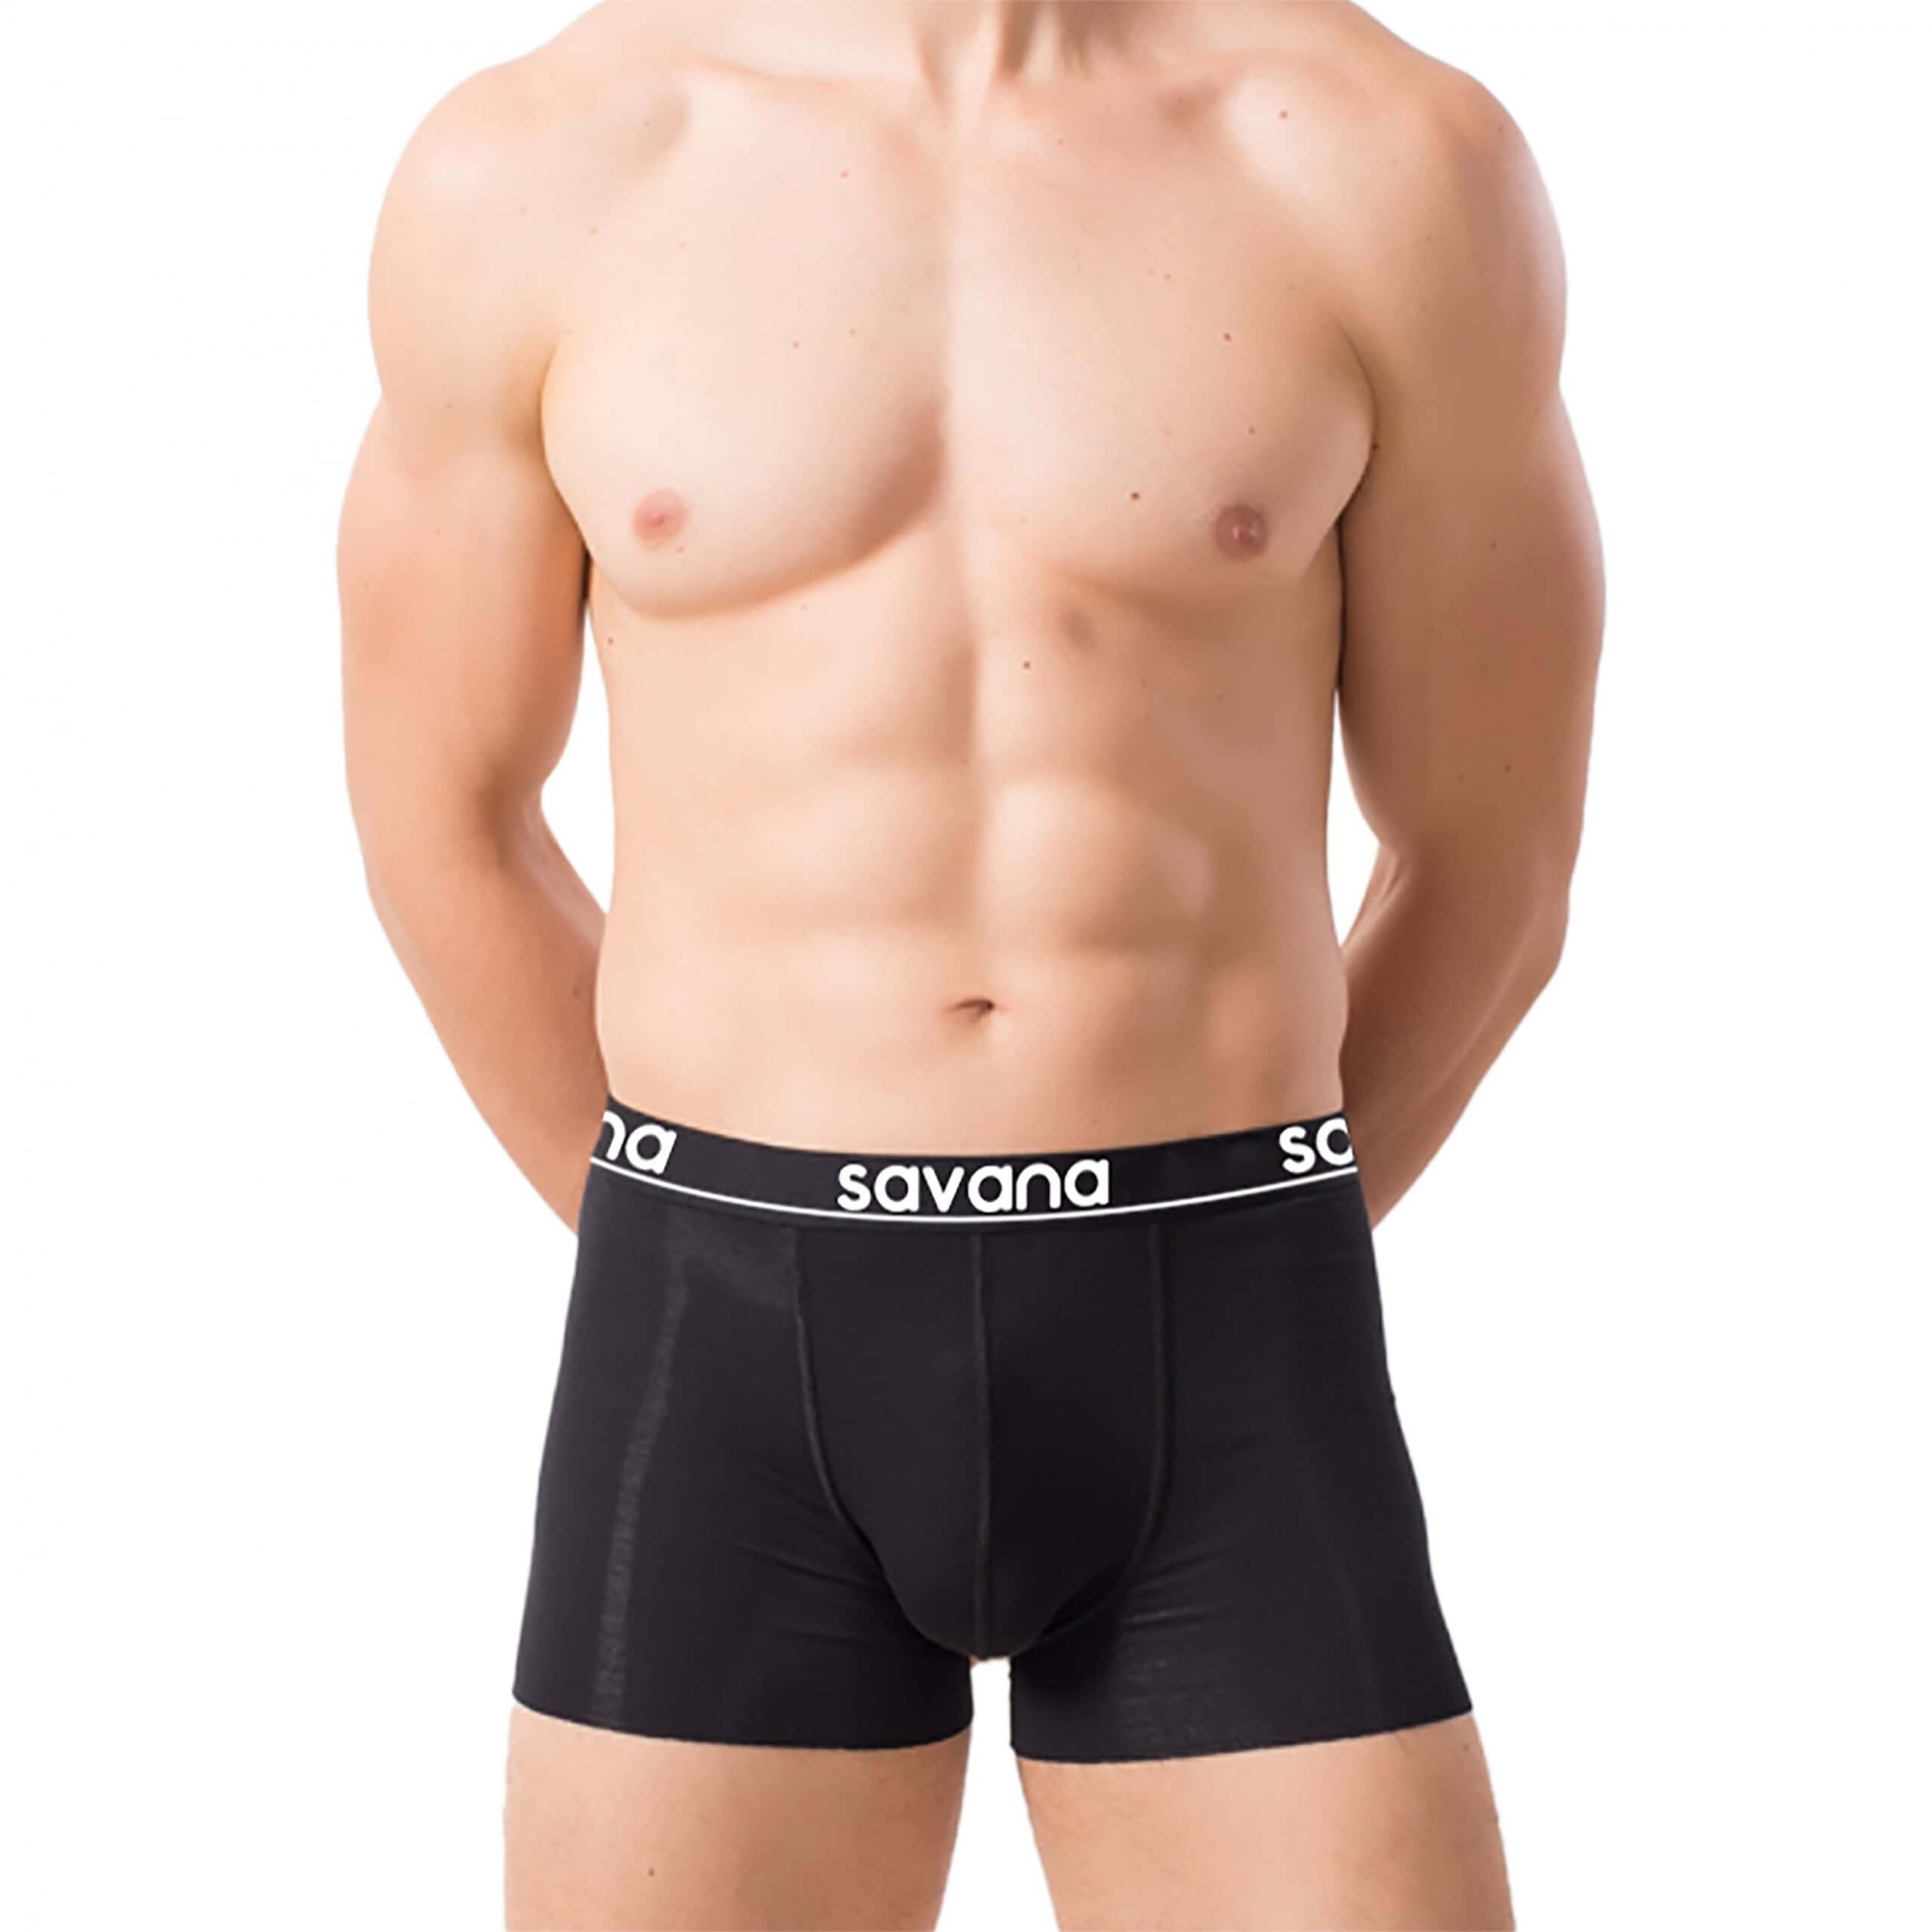 savana-m07-underwear-front-whitebackground-7-title-6x